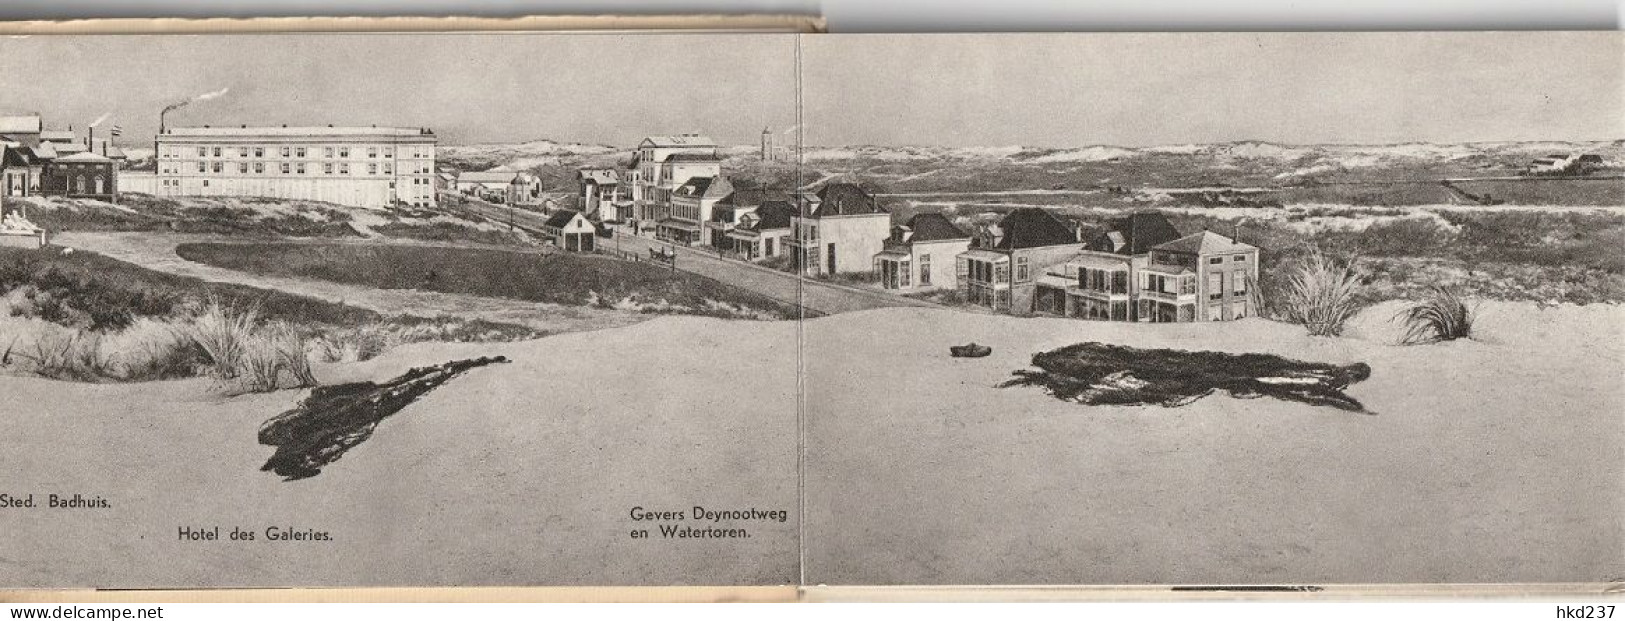 Panorama Mesdag Scheveningen In 1881 Boekje 12 Kaarten Carnet Booklet       3370 - Scheveningen